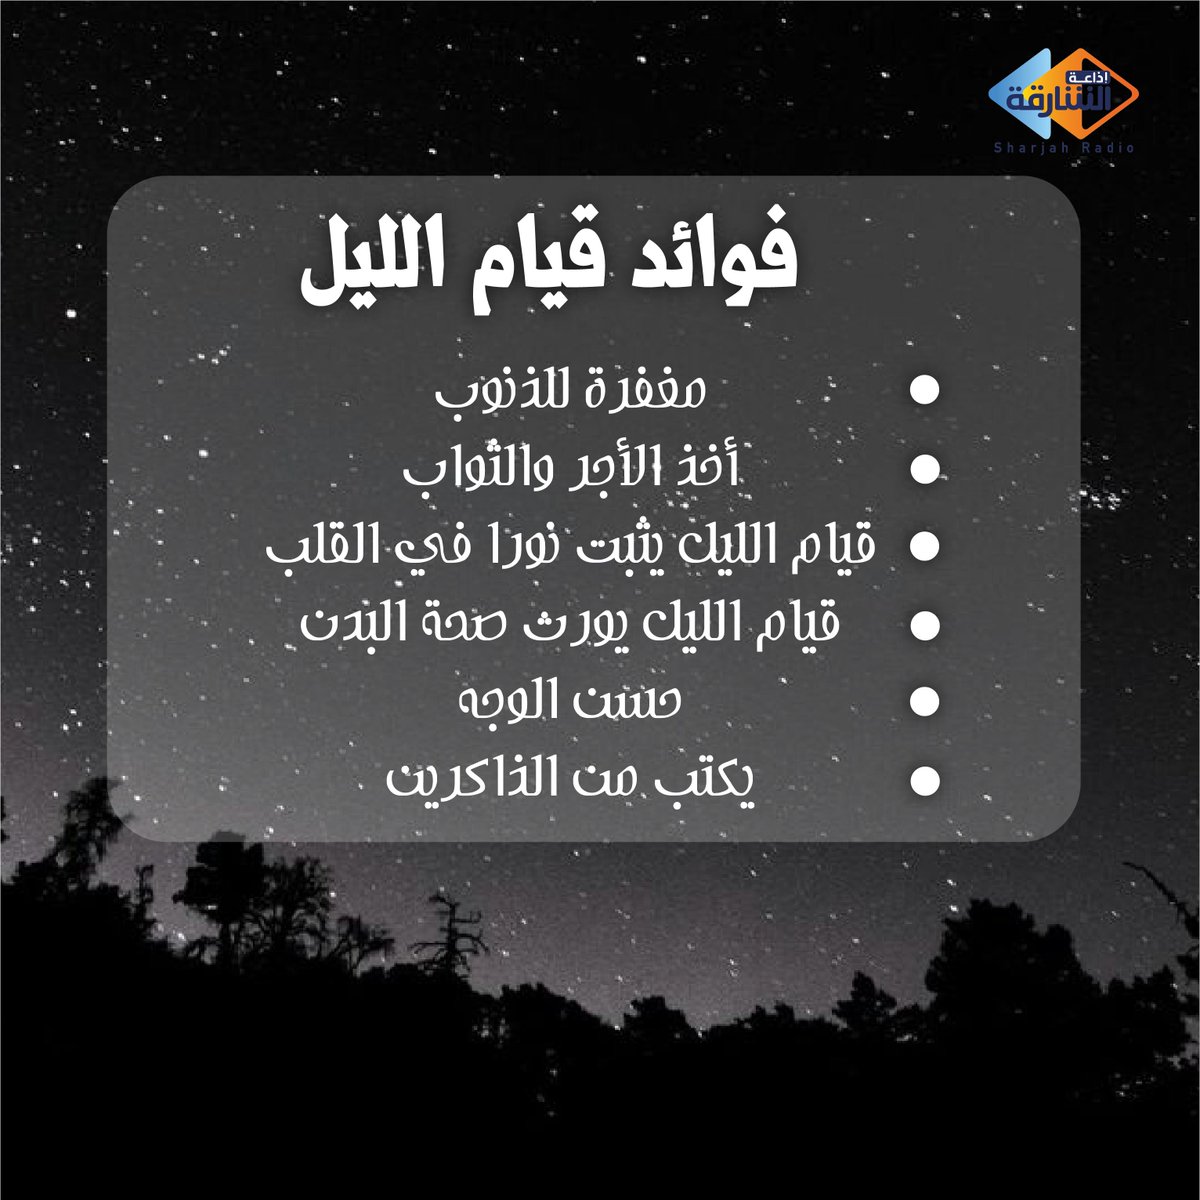 10289 اسرار قيام الليل- لحظات روعة بينك و بين الله دلال خالد